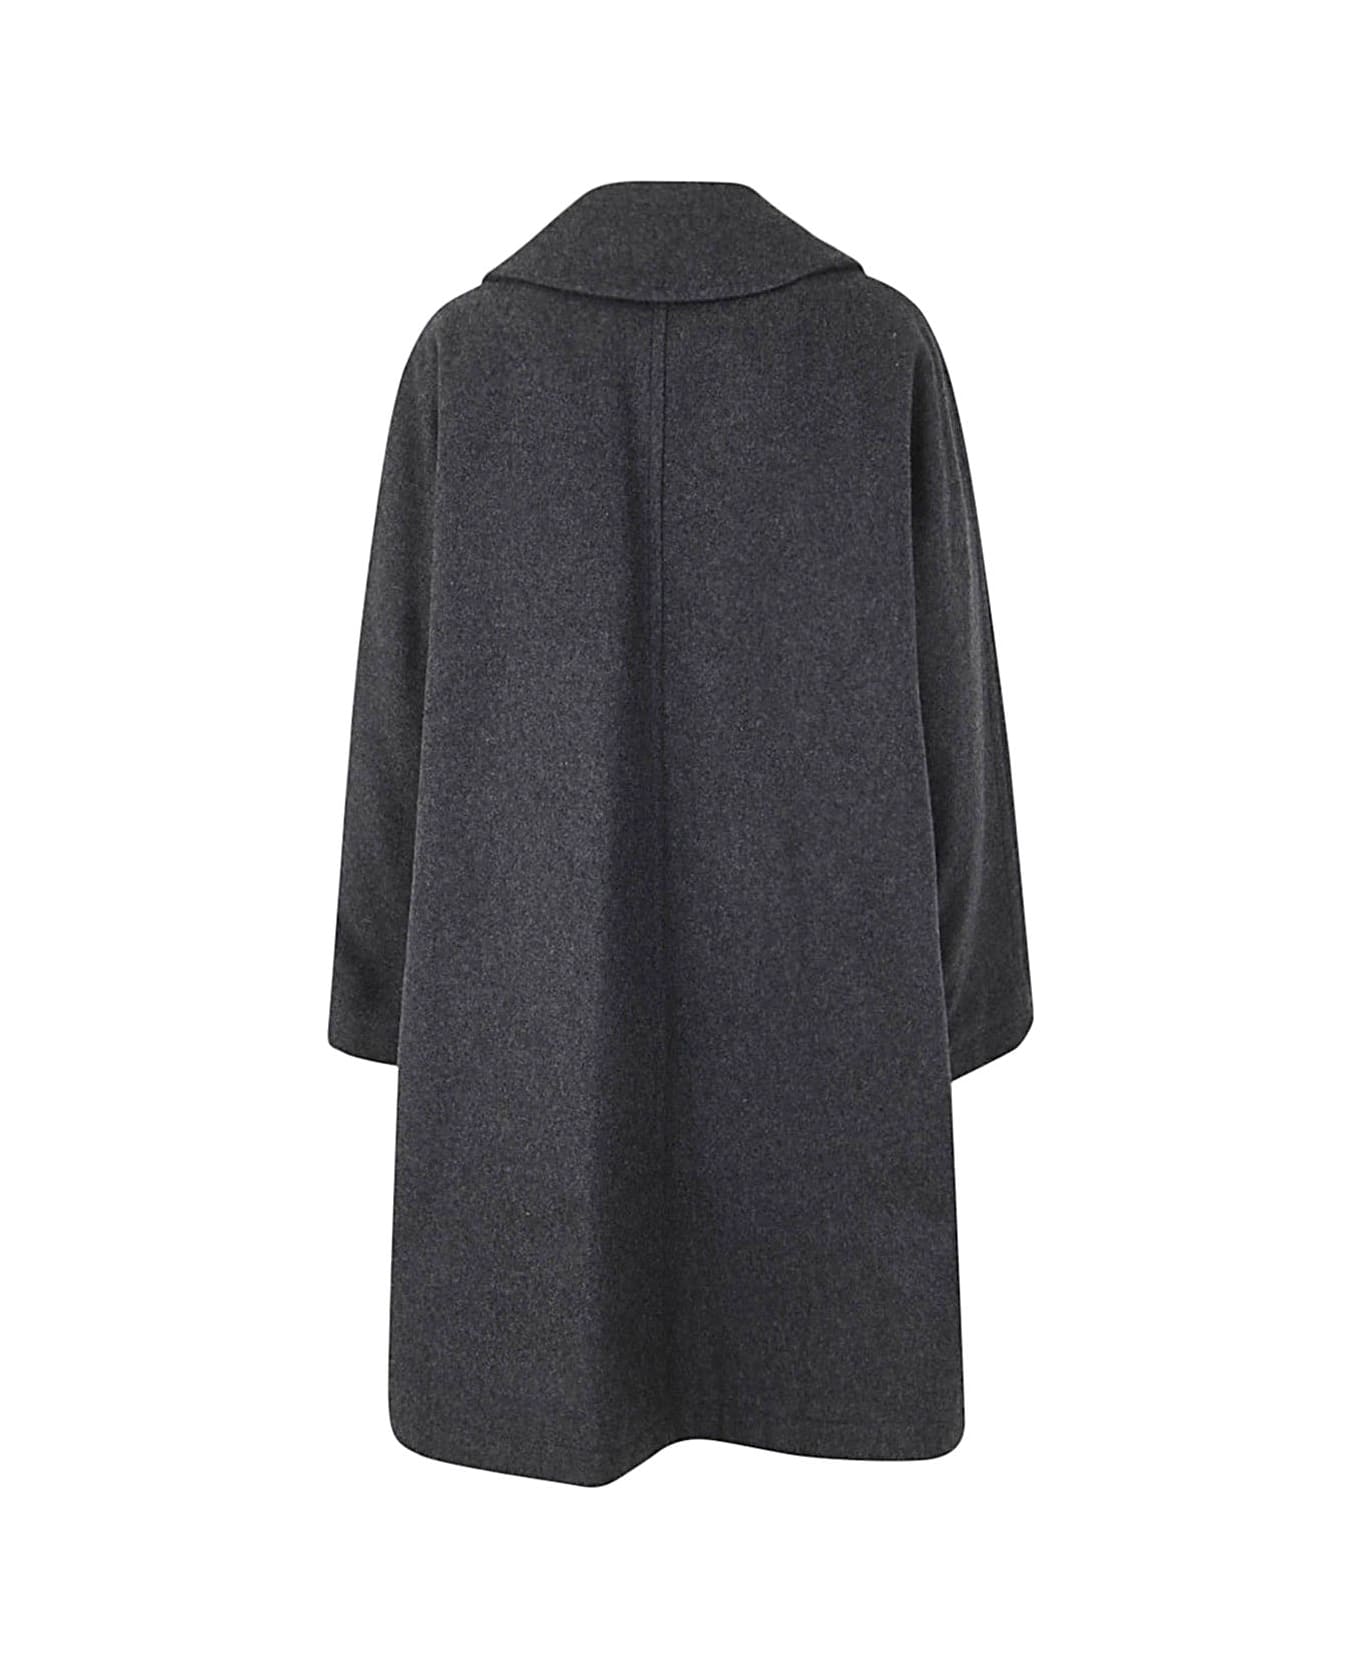 Comme des Garçons Comme des Garçons Ladies` Coat - Charcoal Grey コート